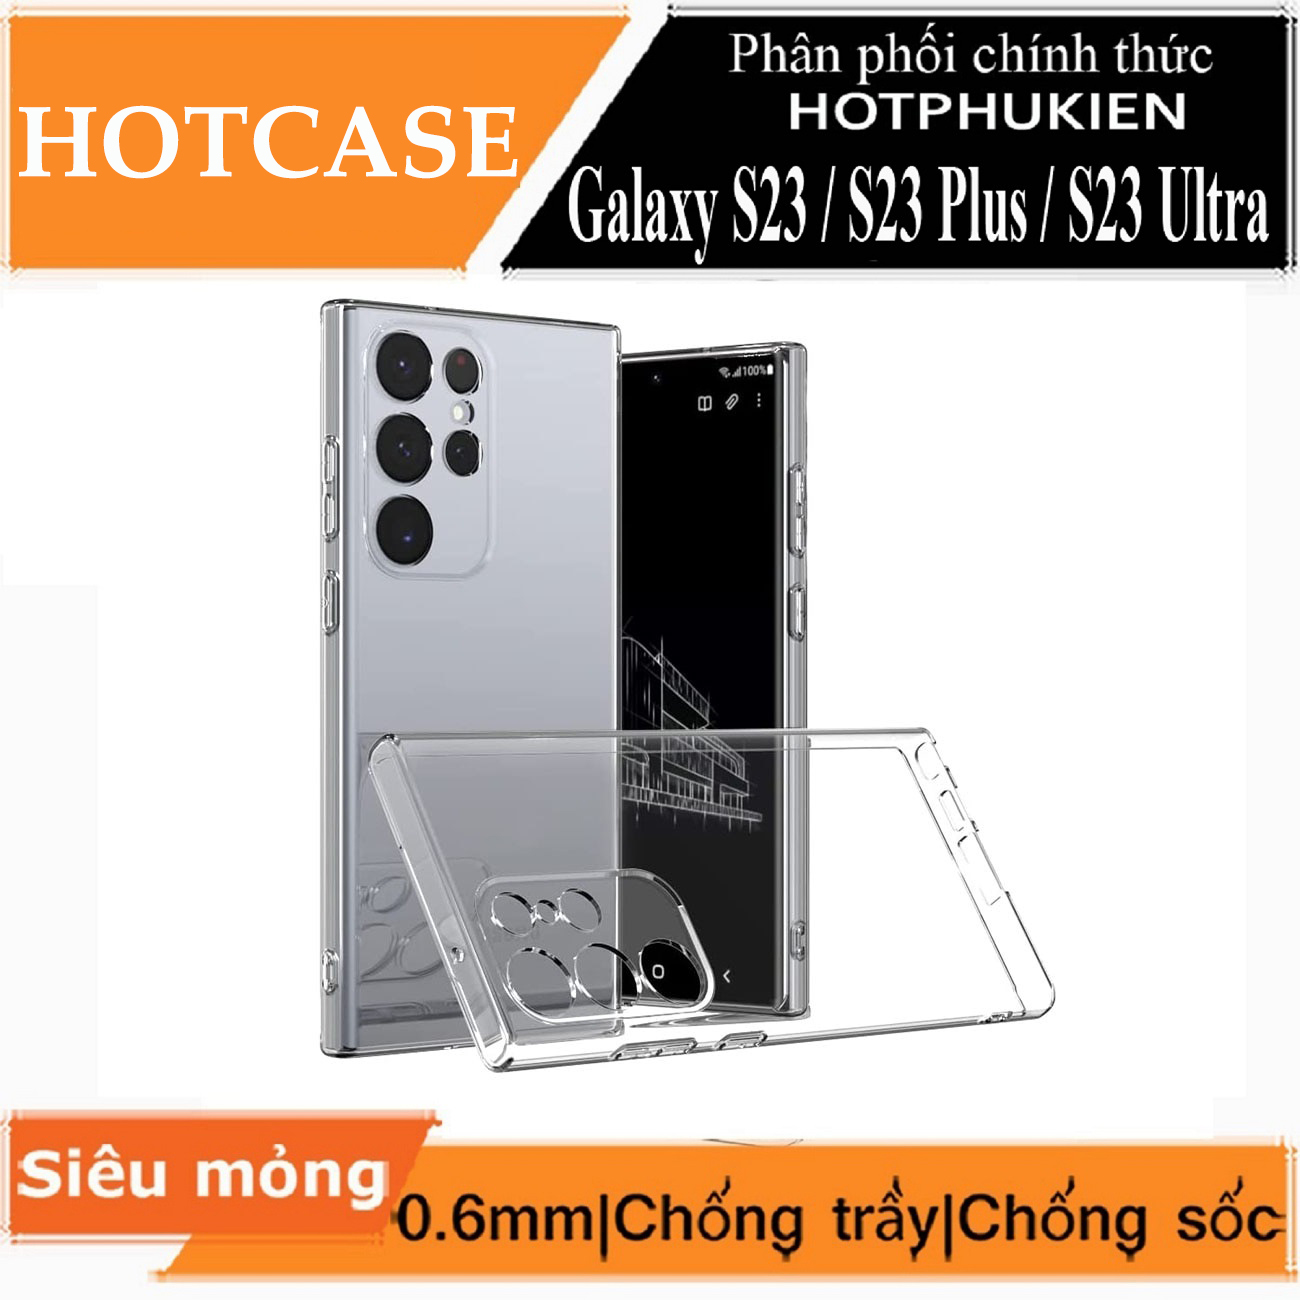 Ốp lưng silicon cho Samsung Galaxy S23 Plus hiệu HOTCASE - siêu mỏng 0.6mm, thiết kế trong suốt, chống trầy xước